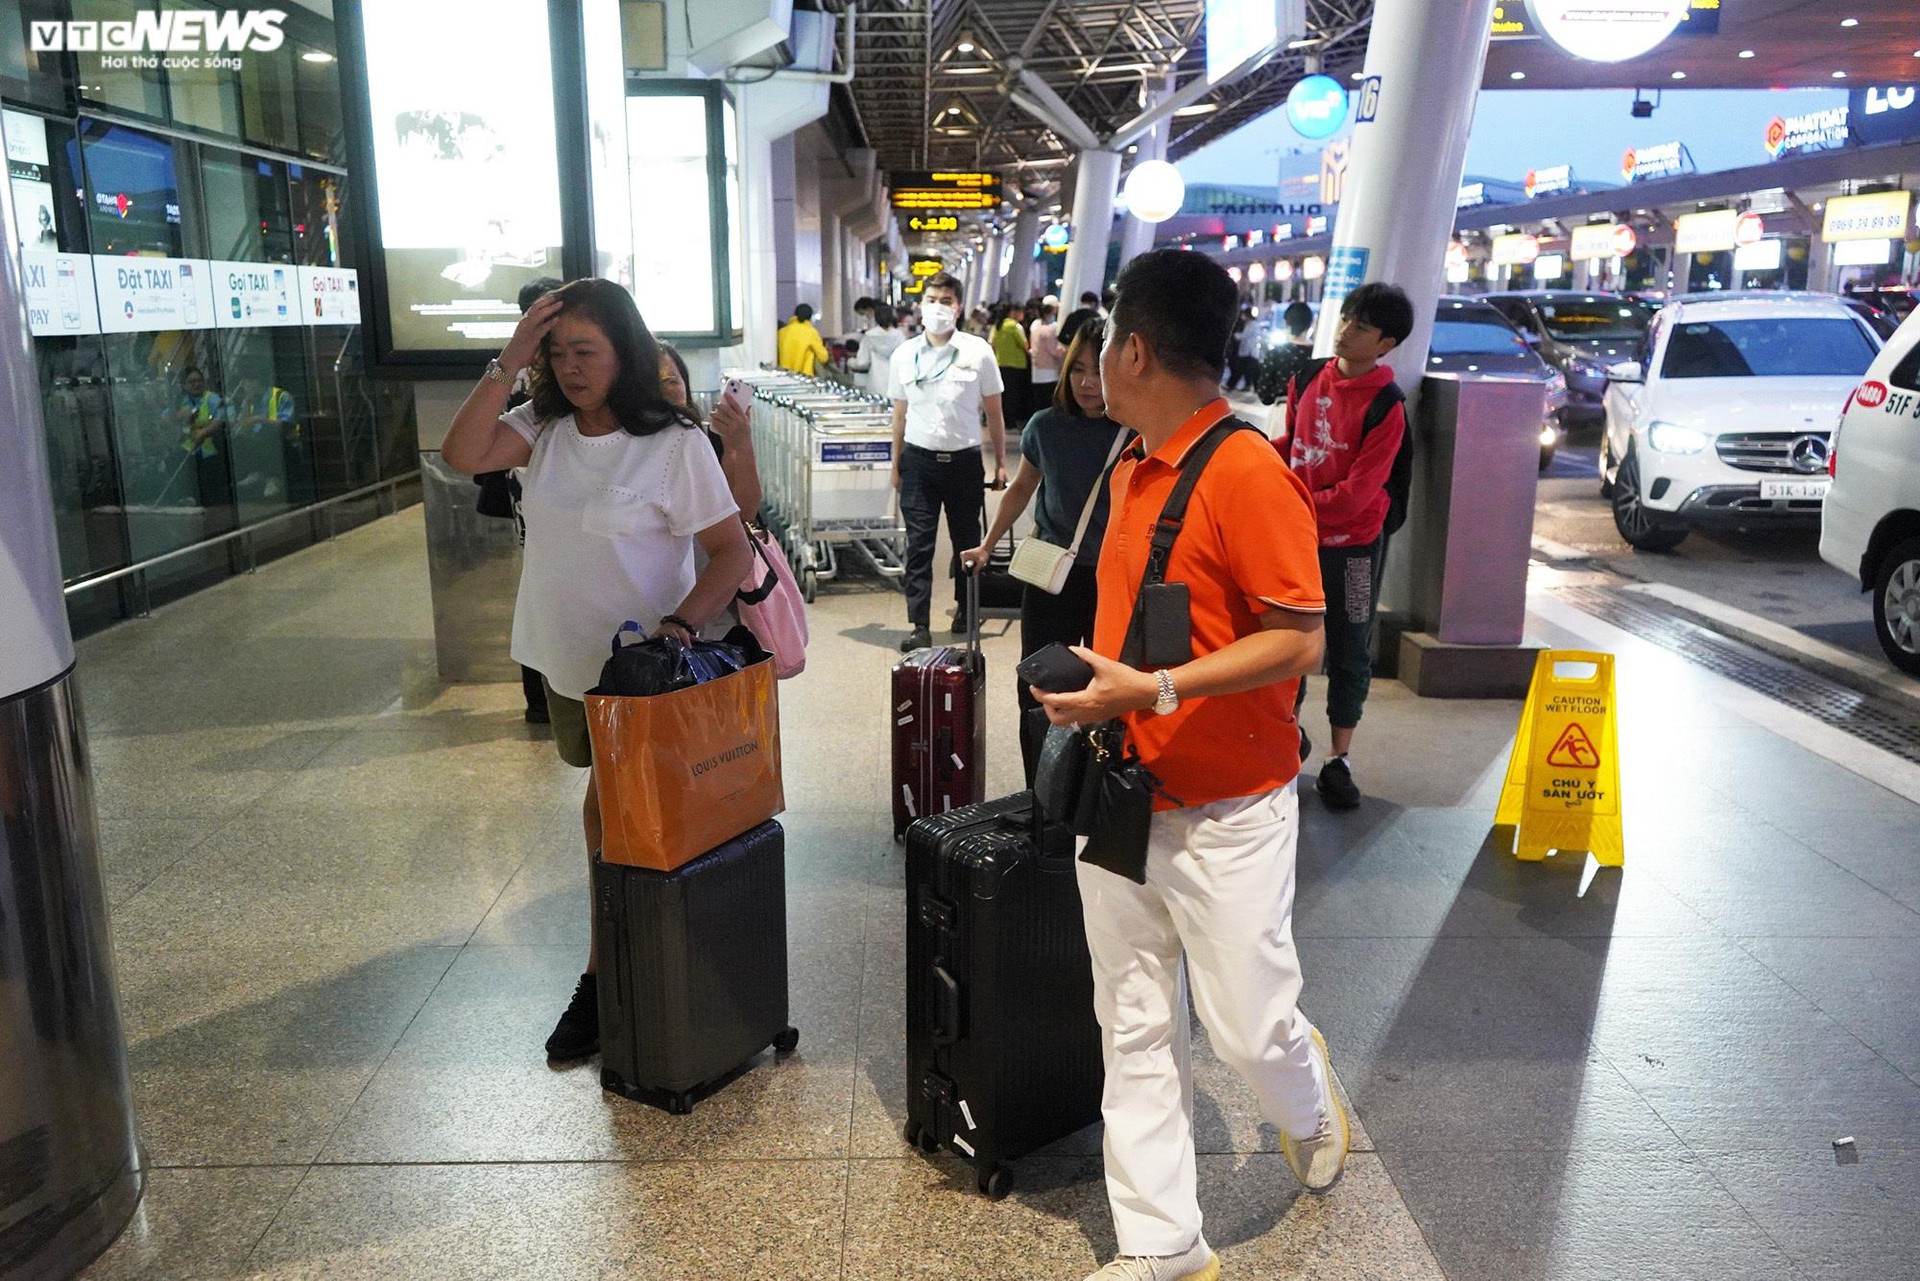 Ông Nguyễn Nam Tiến - Phó Giám đốc Cảng hàng không Quốc tế Tân Sơn Nhất cho biết,  để đảm bảo cho hành khách đi được đúng giờ, đúng chuyến, tất cả các lực lượng sẽ đảm bảo các slot đã được cấp đảm bảo không sang được những giờ khác, không bị chậm hủy chuyến.